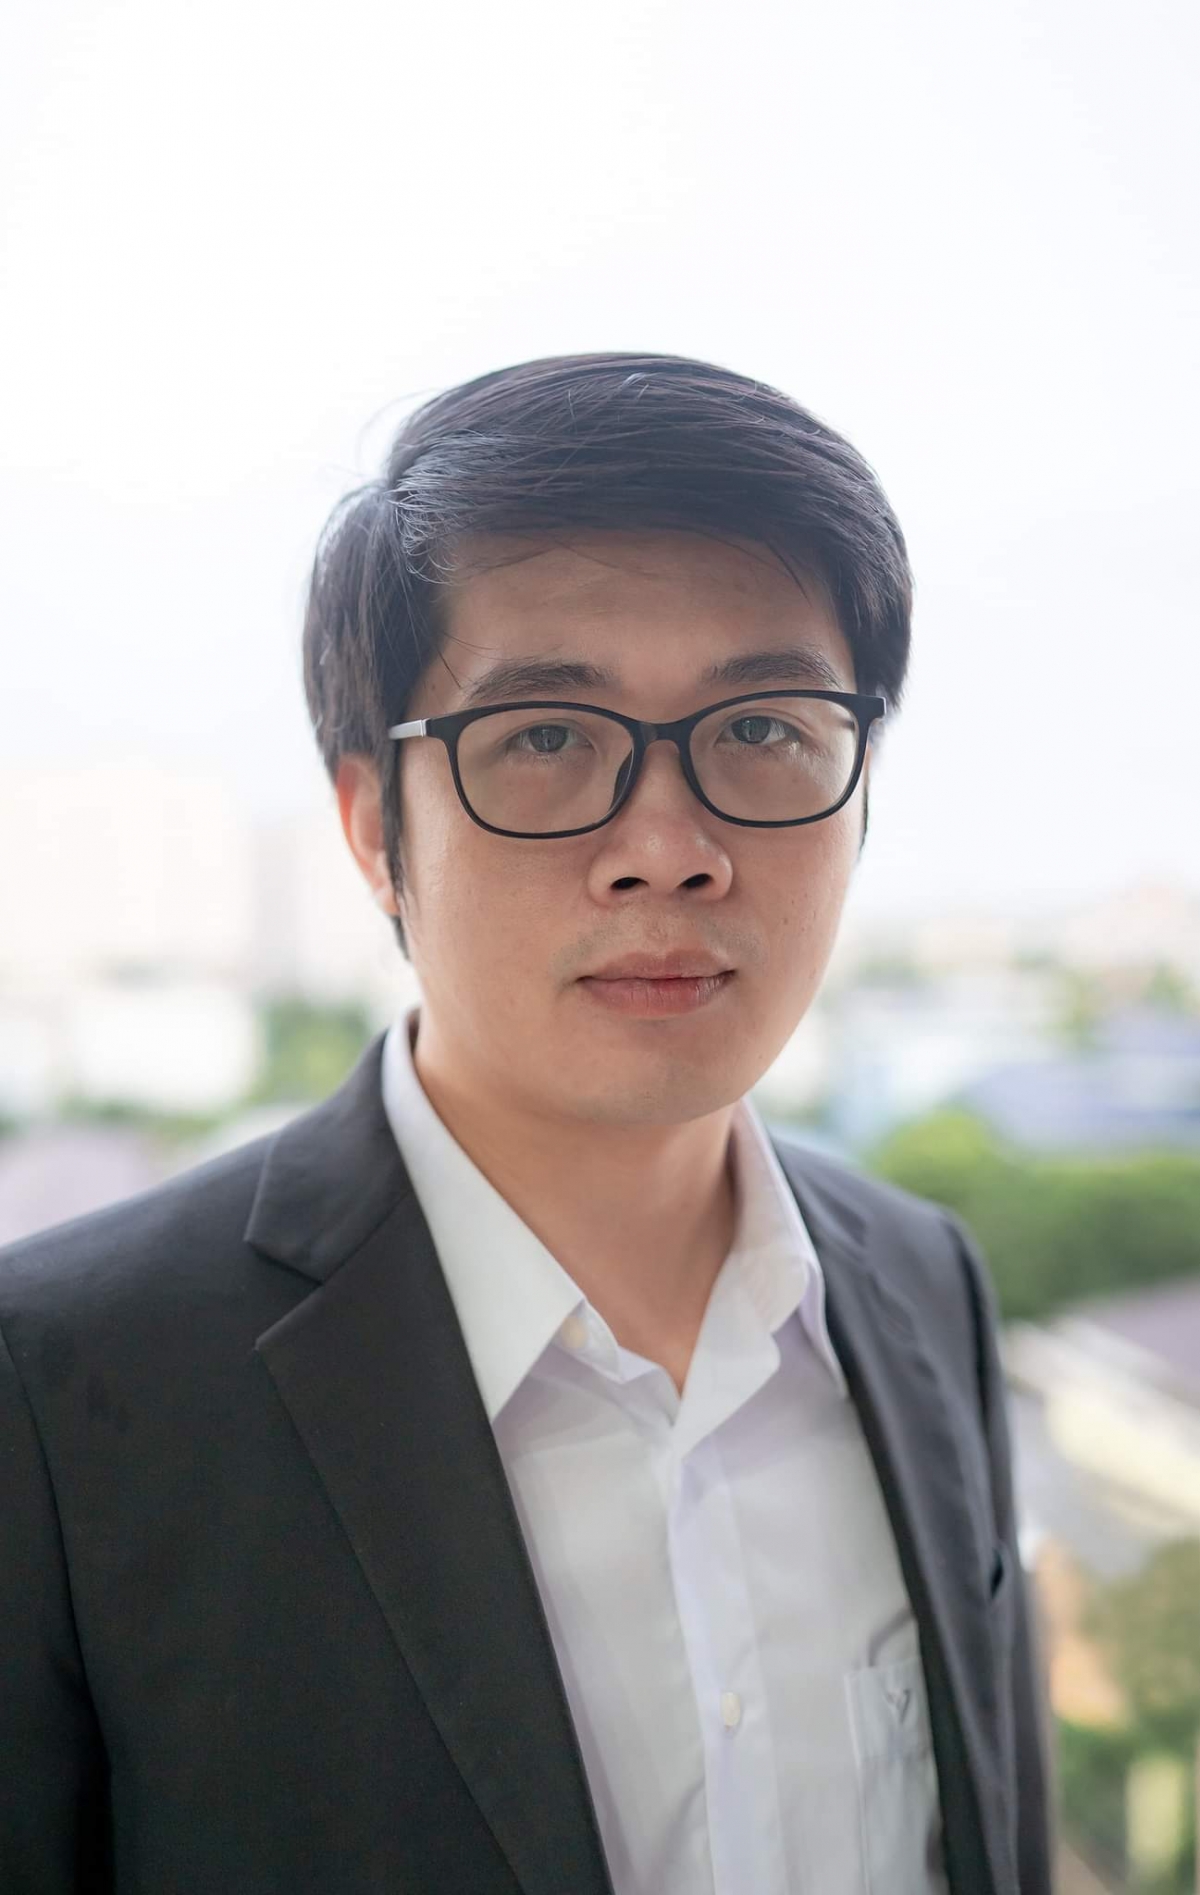 Tiến sĩ Bùi Lê Minh, Trưởng ngành Công nghệ Sinh học - Viện Kỹ thuật Công nghệ cao NTT (ĐH Nguyễn Tất Thành)